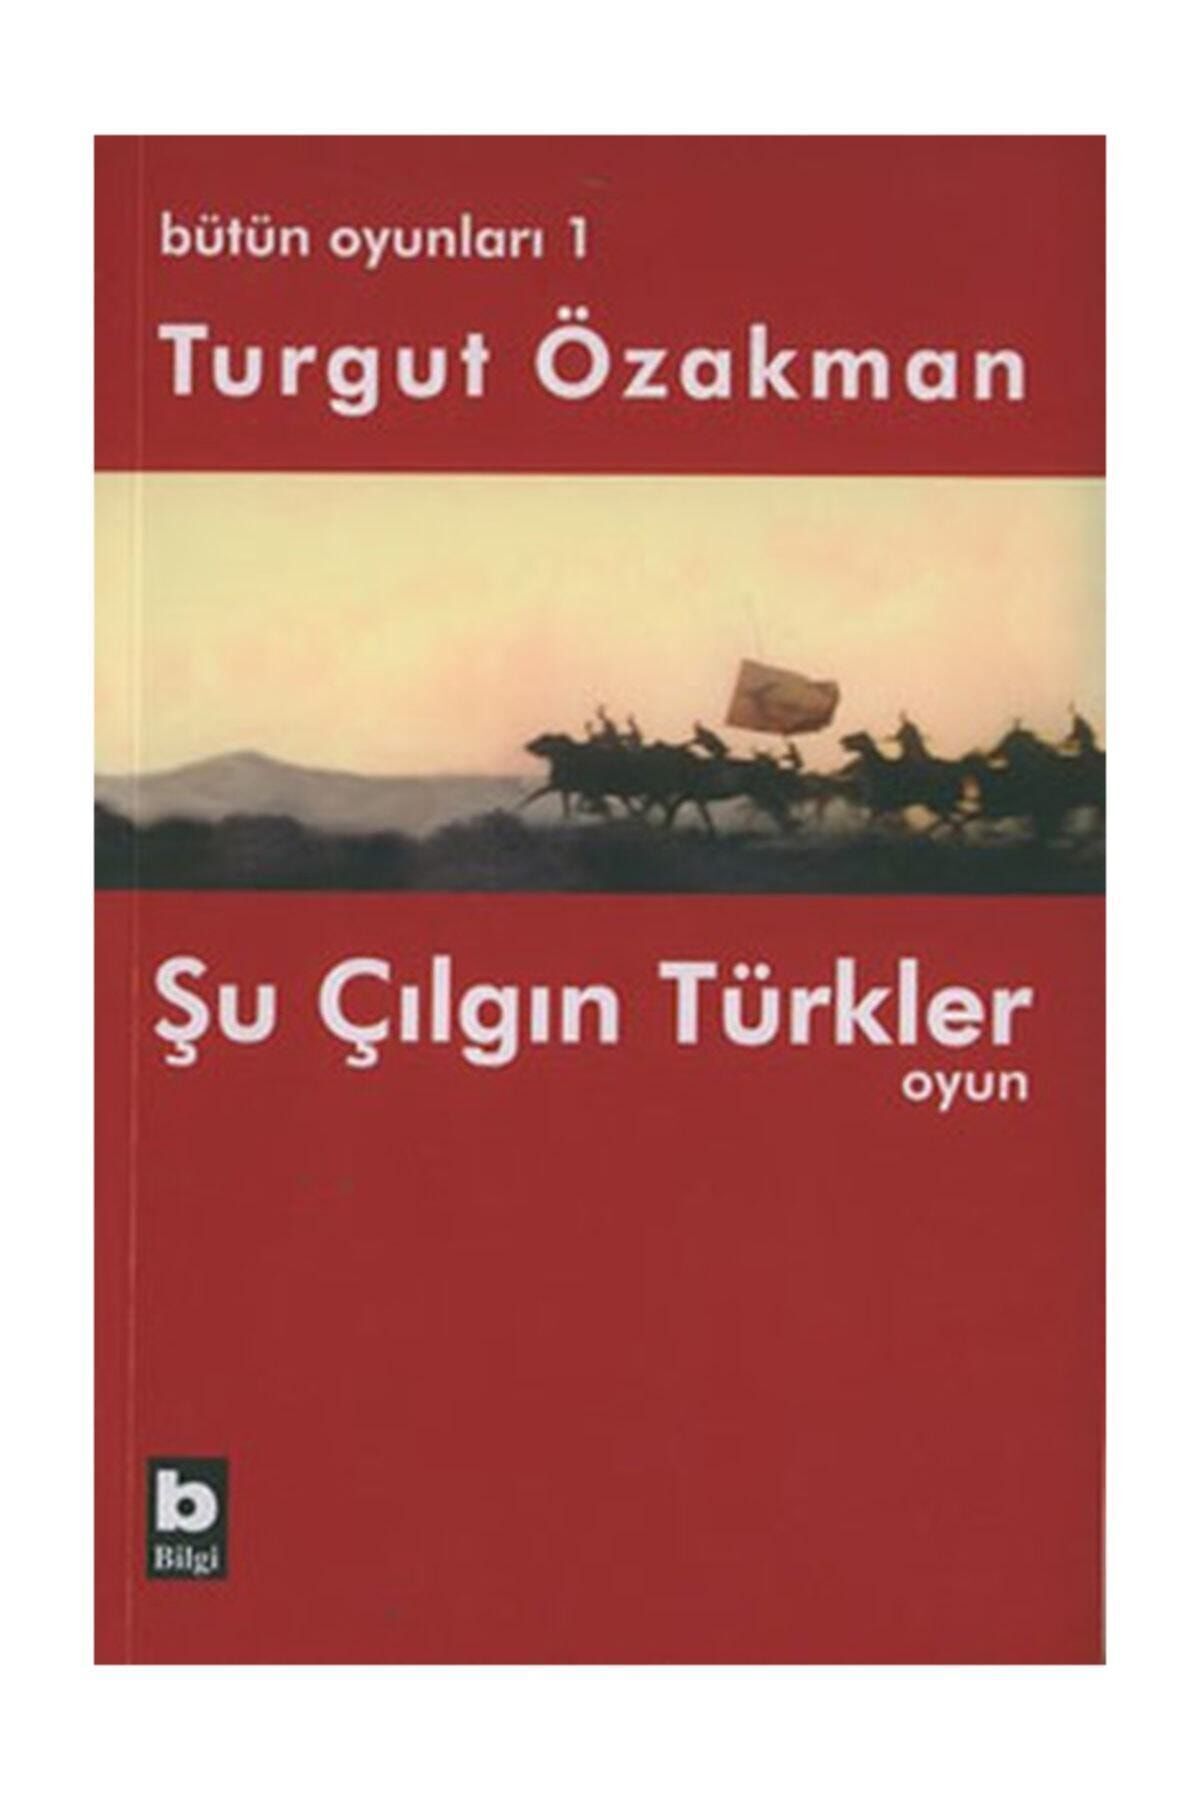 Bilgi Yayınları Bütün Oyunları 1 Şu Çılgın Türkler